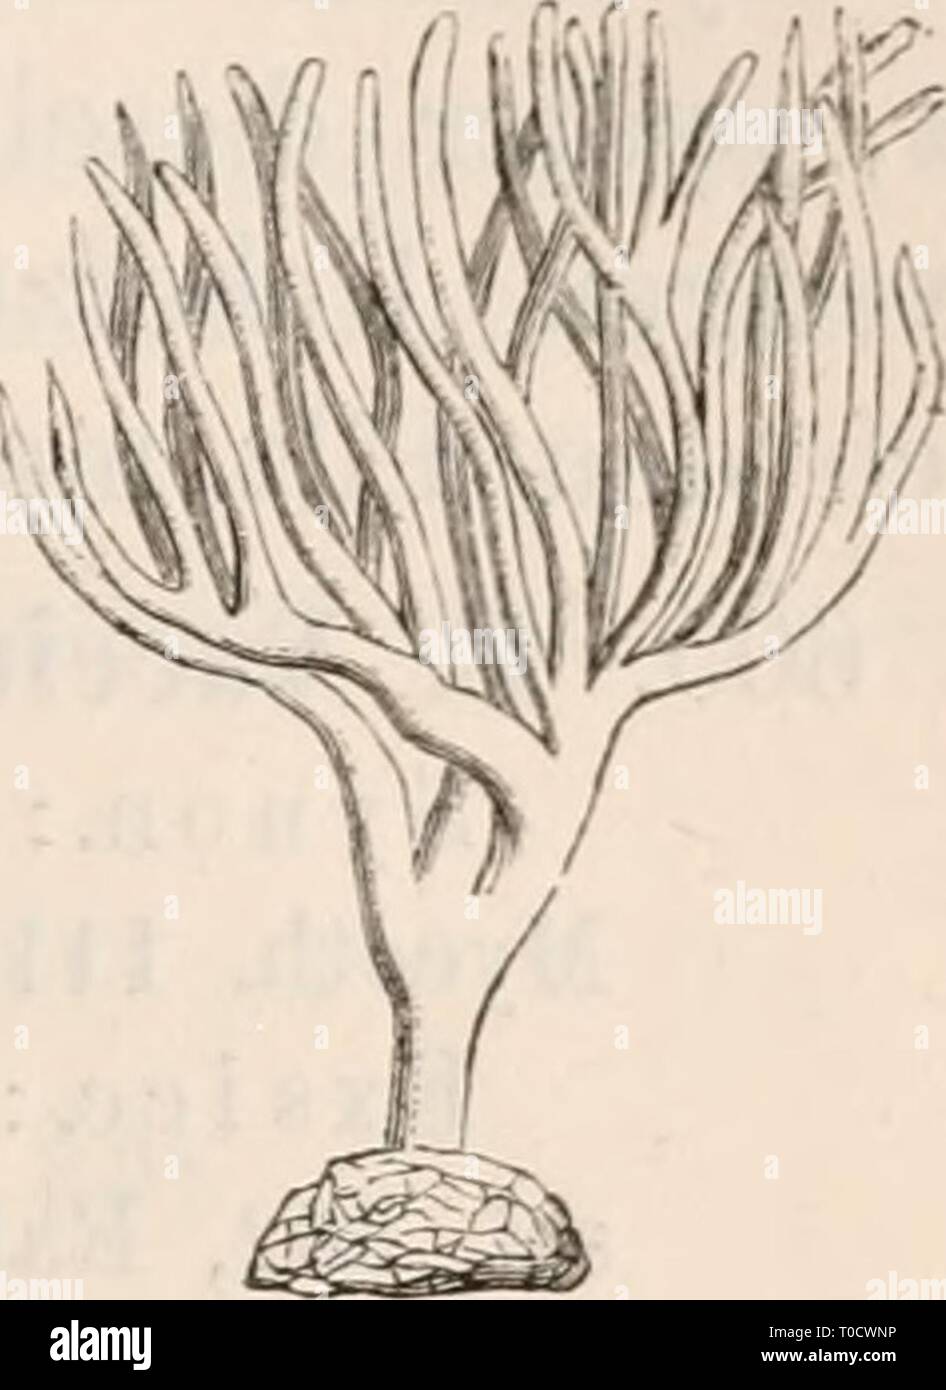 Dr L Rabenhorst's Kryptogamen-Flora von Dr. L. Rabenhorst's Kryptogamen-Flora von Deutschland, Oesterreich und der Schweiz drlrabenhorstskr0101rabe Year: 1884  1 2 Fig. 1. Thelephora laciniata. Fig. 2. Thelepliora palraata, kleineres Exem- plar; beide in natürlicher Grösse. Craterellus. F. fleischig oder häutig, meist trichter- oder trompetenförmig; Hymeniiuii imterseits, glatt, runzlig oder gerippt. Stock Photo